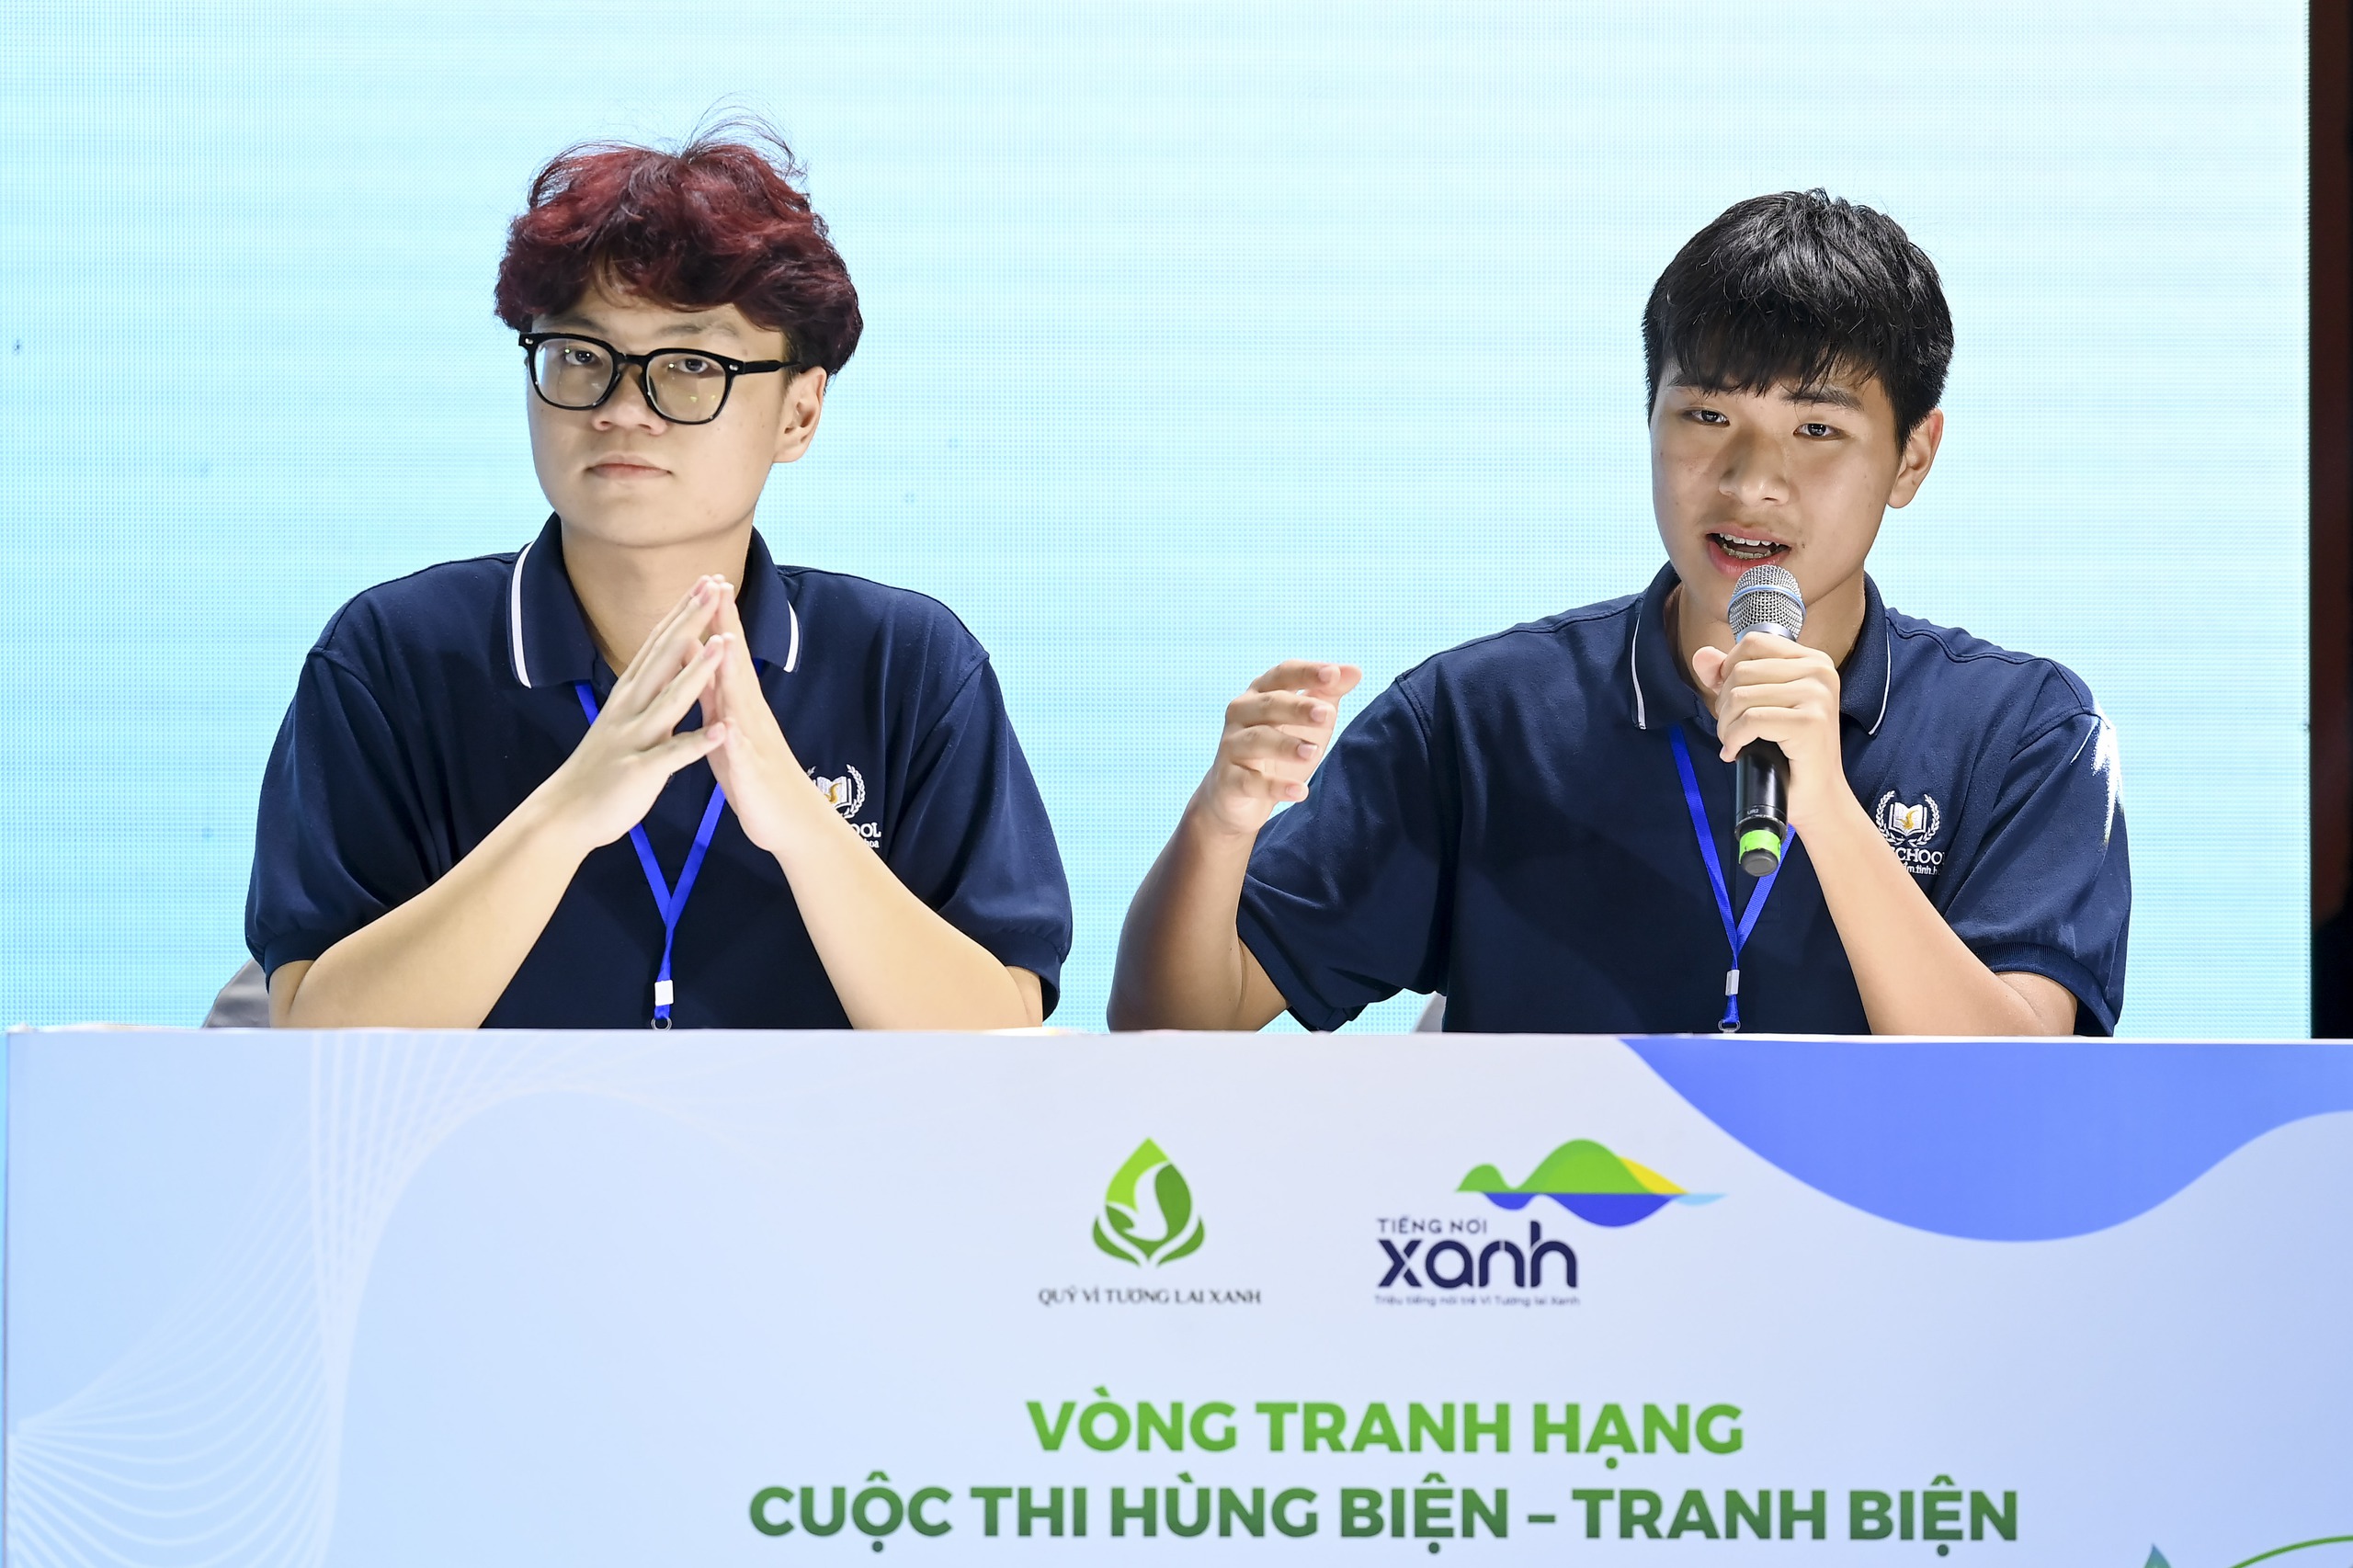 Đội thi Nấm Cao xuất sắc đoạt giải Nhất ở bảng tiếng Việt với ý tưởng về loại vật liệu mới thân thiện với môi trường hơn nữa.